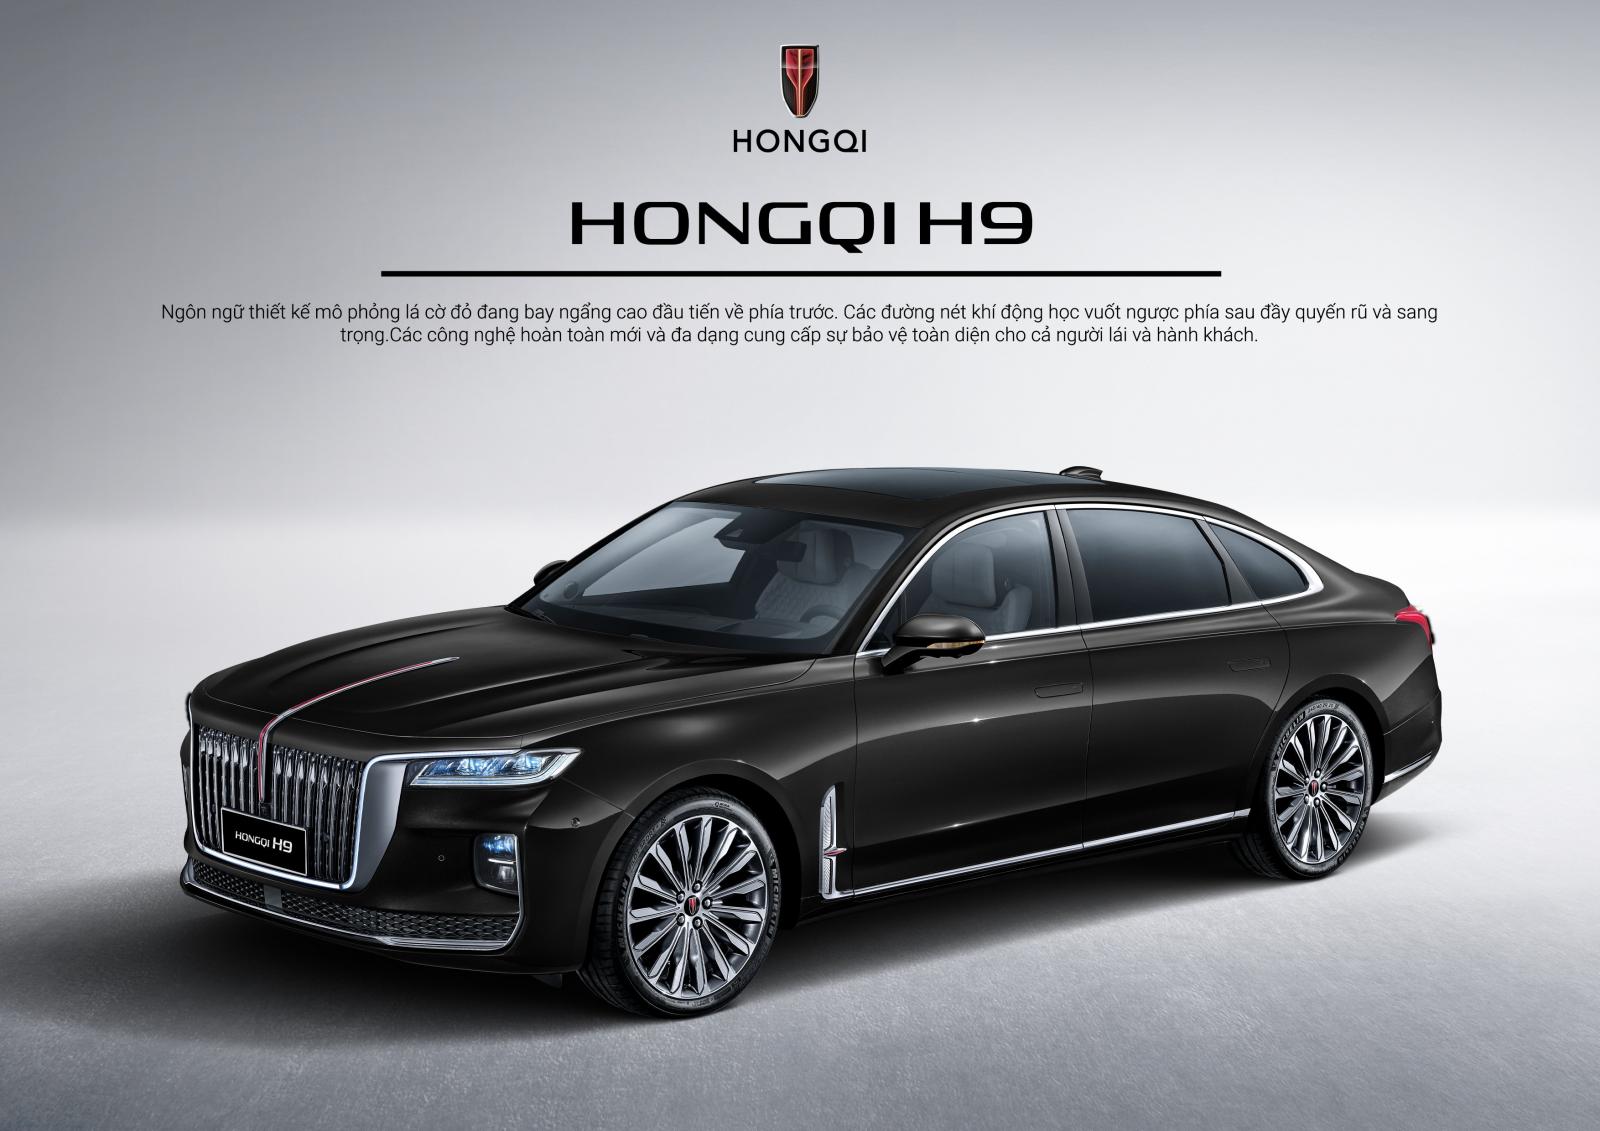 Giá xe Hongqi H9 mới nhất.